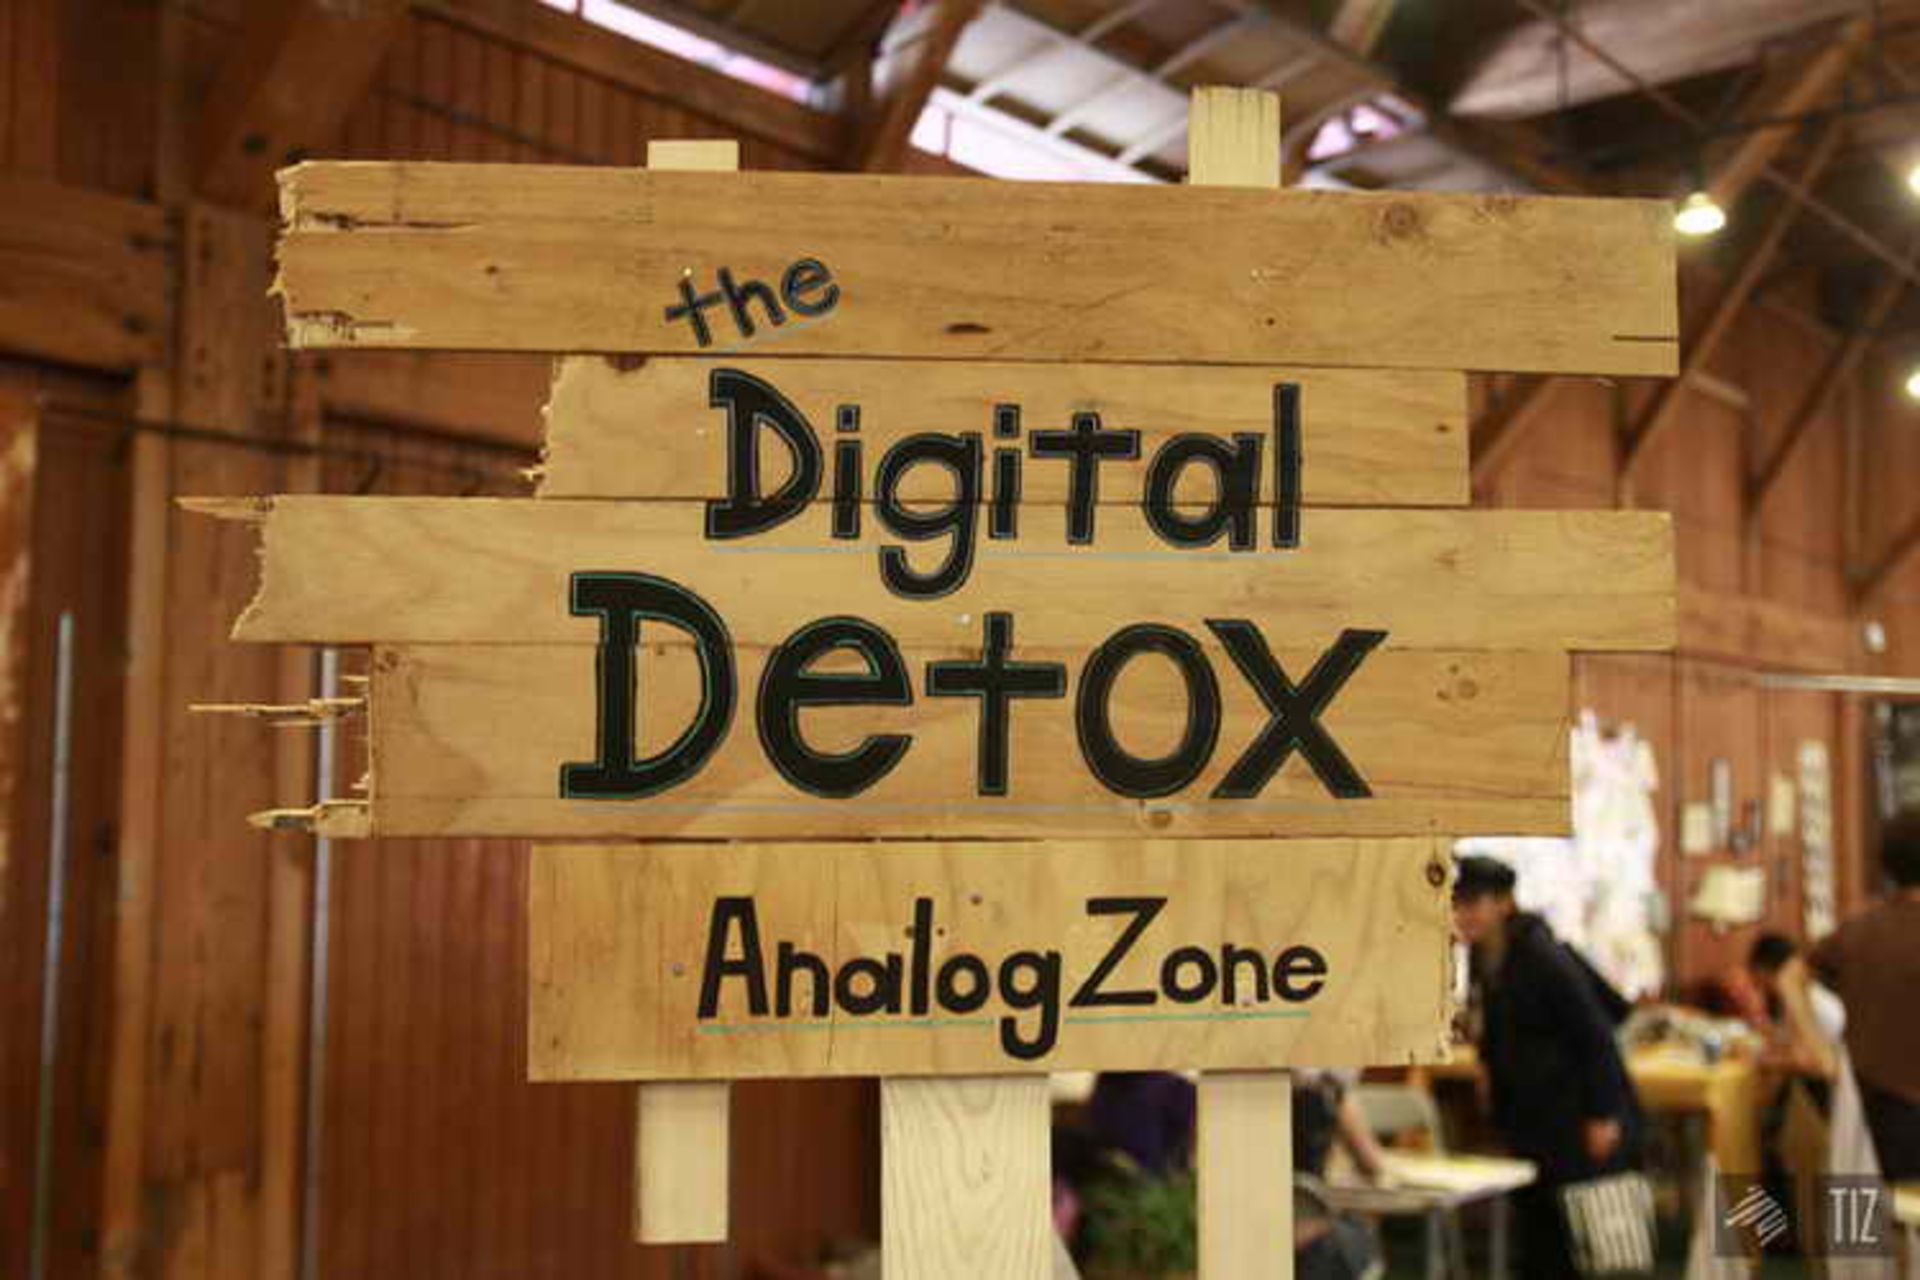  digital detox